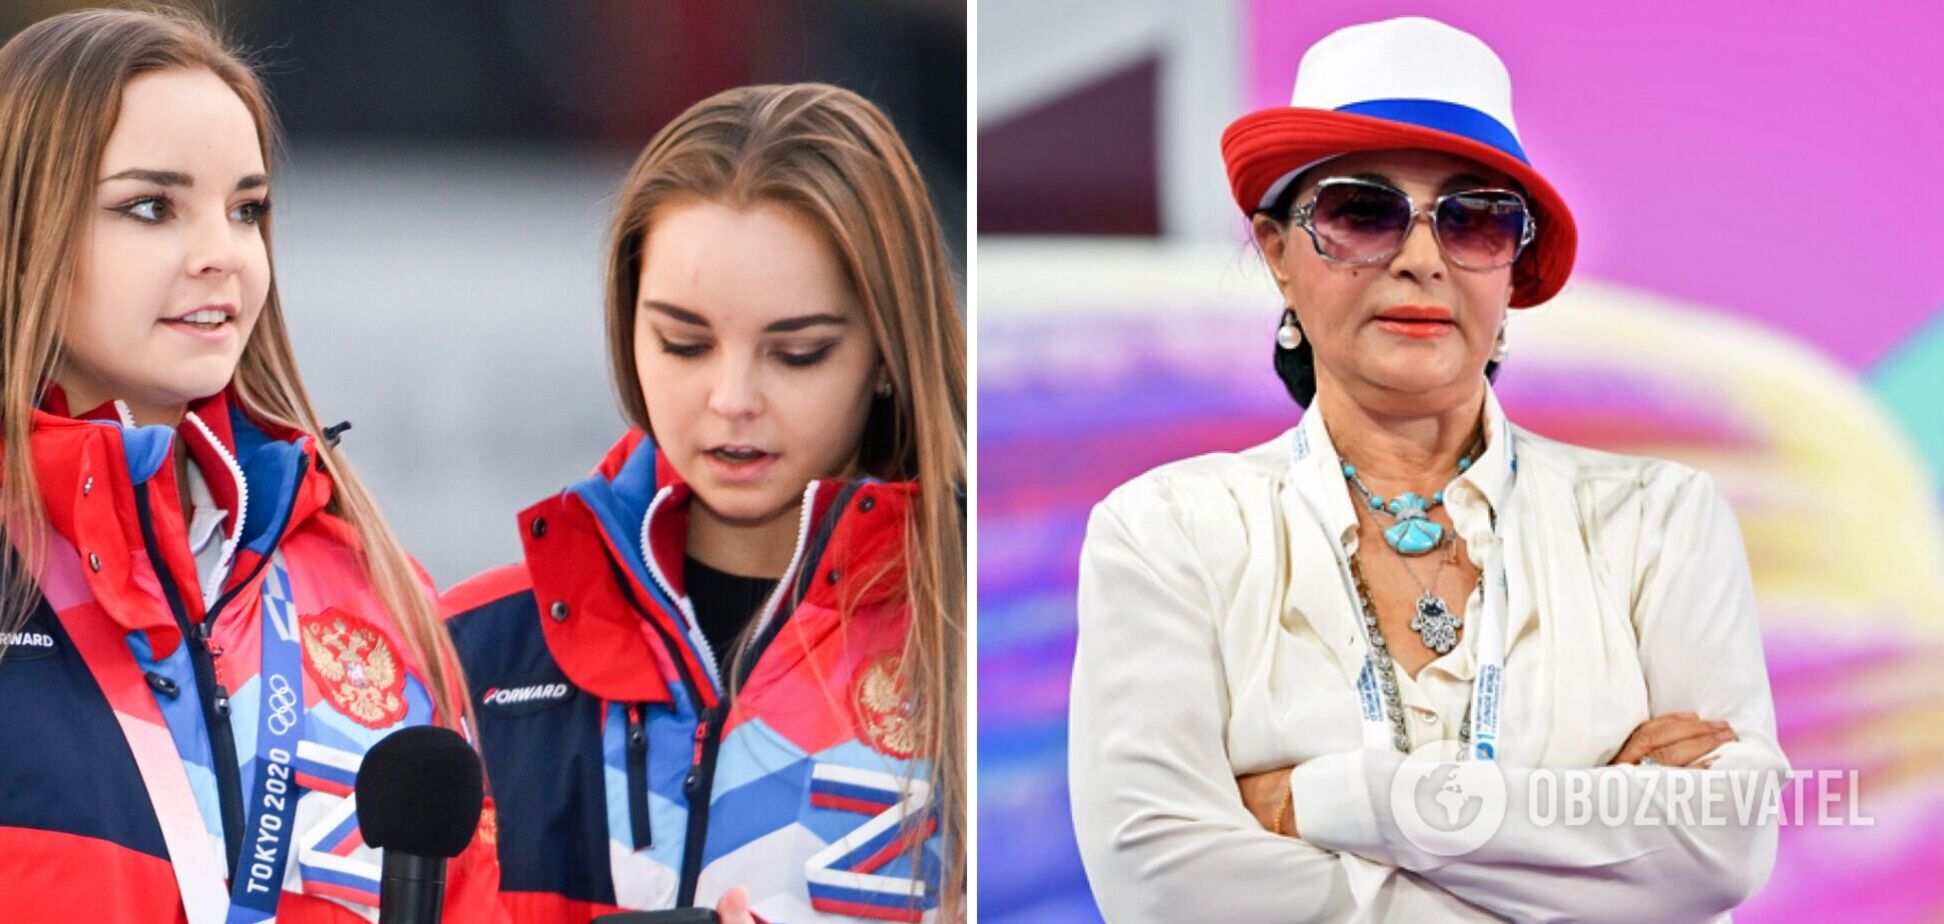 'Унизительно!' В РФ заявили, что россиян заставляют выступать на Олимпиаде под похоронный марш